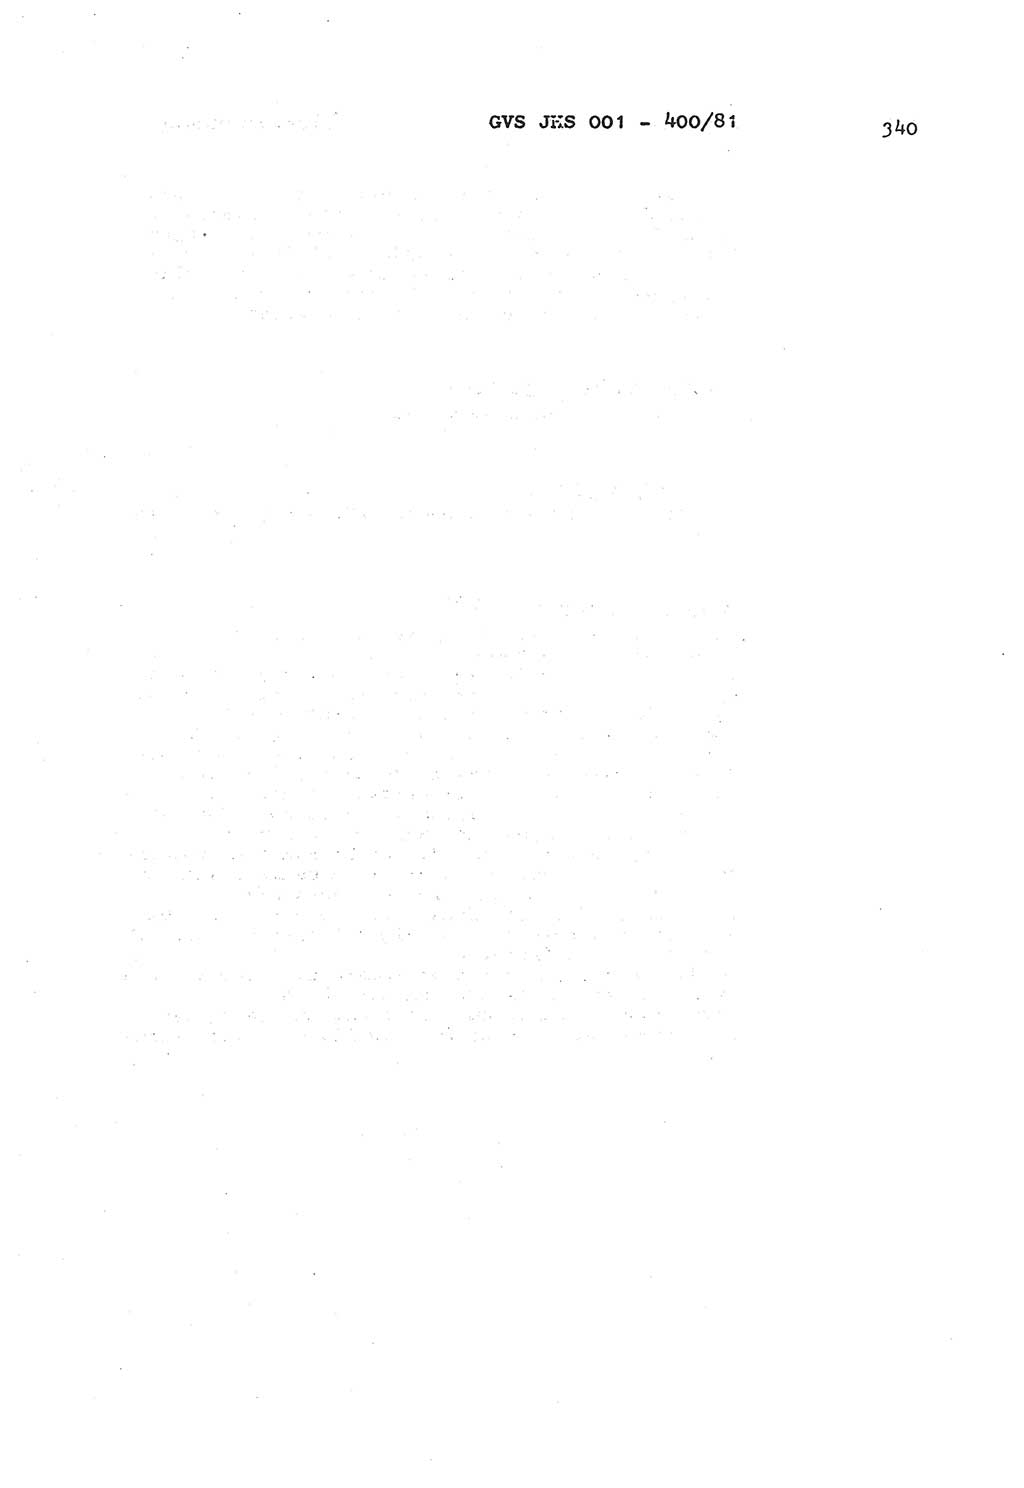 Wörterbuch der politisch-operativen Arbeit, Ministerium für Staatssicherheit (MfS) [Deutsche Demokratische Republik (DDR)], Juristische Hochschule (JHS), Geheime Verschlußsache (GVS) o001-400/81, Potsdam 1985, Blatt 340 (Wb. pol.-op. Arb. MfS DDR JHS GVS o001-400/81 1985, Bl. 340)